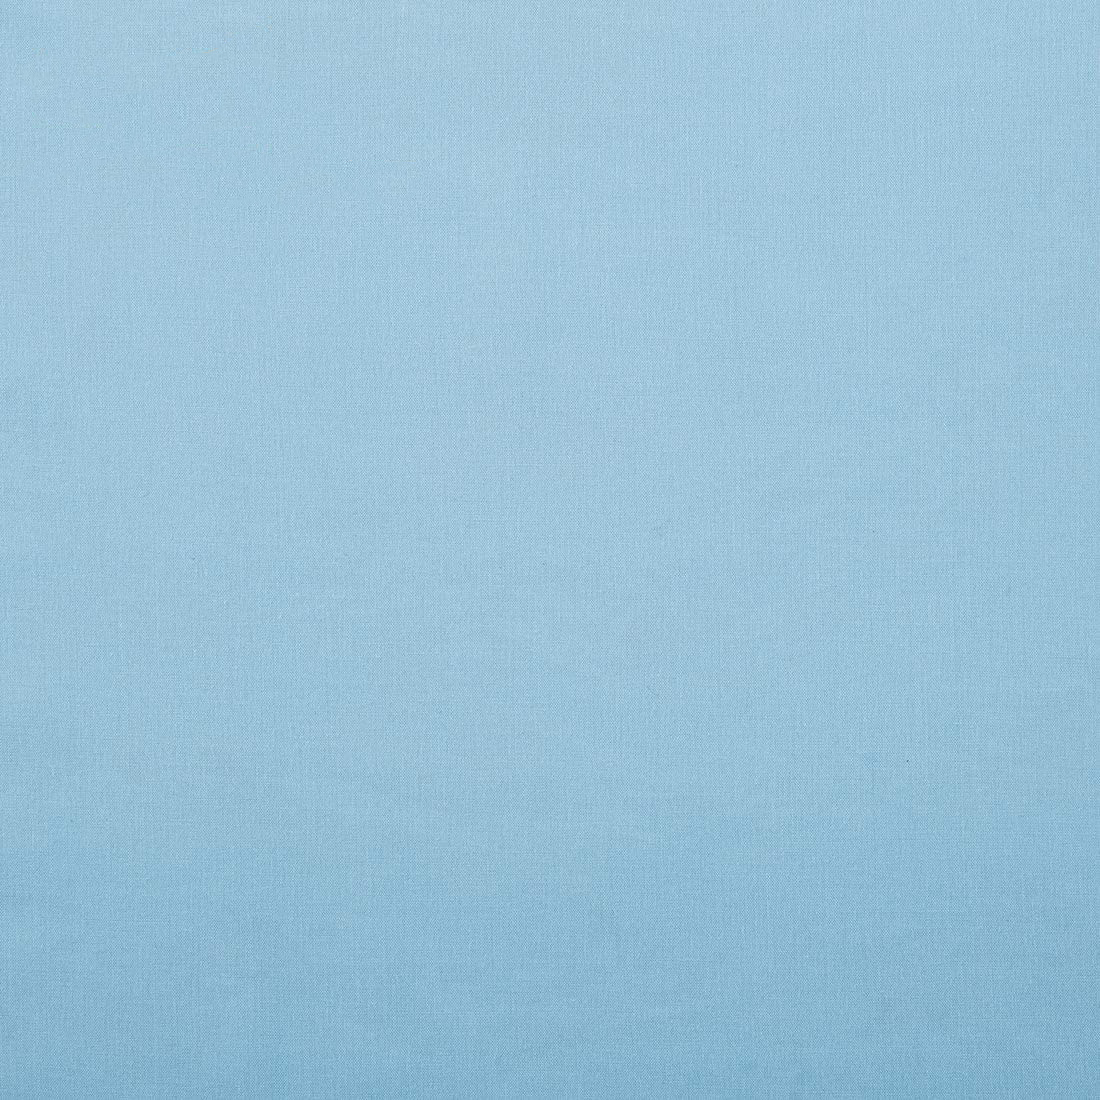 【送料無料】 冬 夏 綿素材 椿オイル 天然保湿成分配合 ライトブルー 掛けふとんカバー セミダブル_画像2